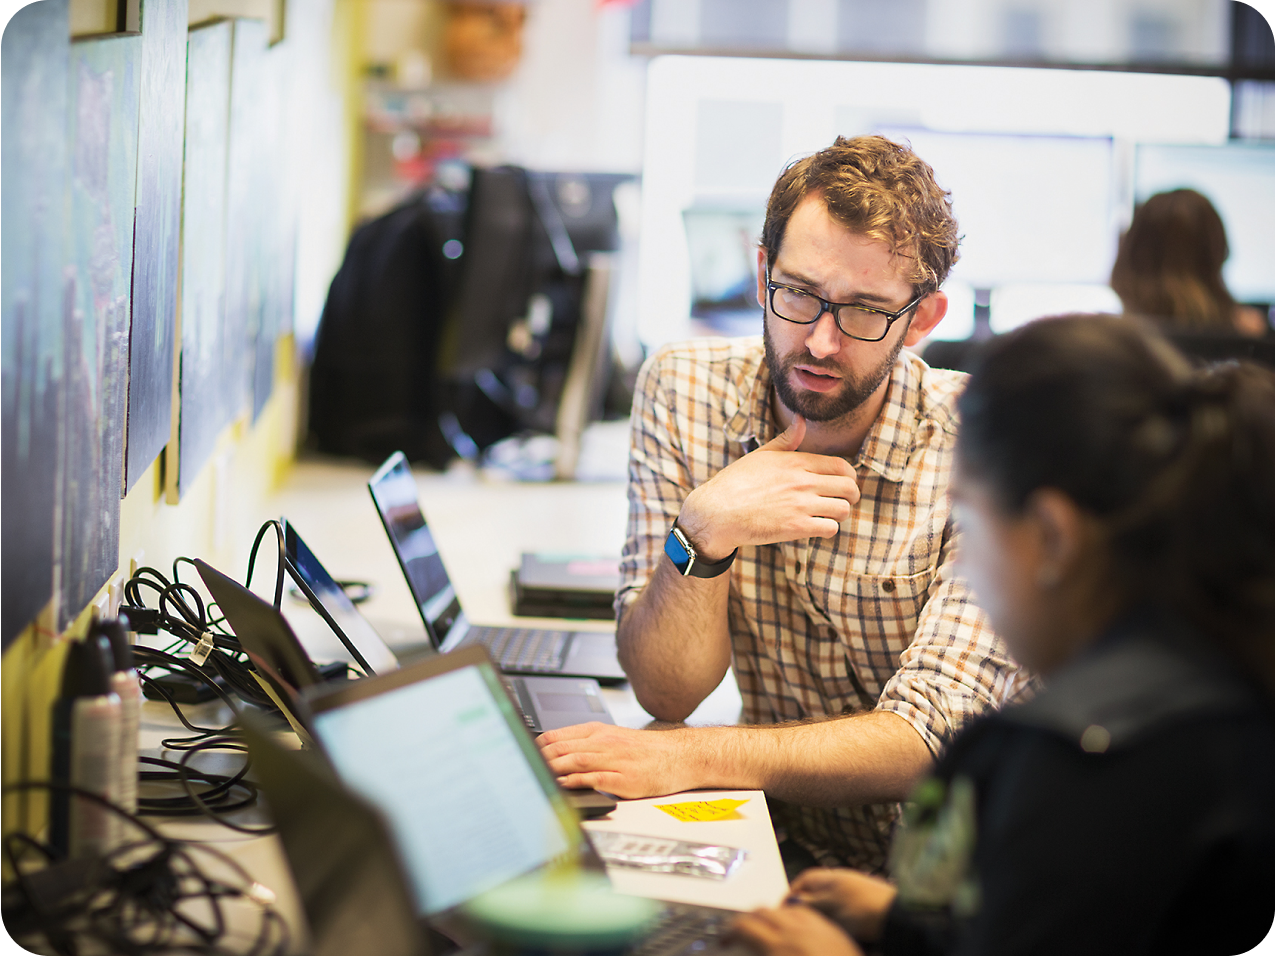 Muž s vousy a v brýlích gestikuluje při diskuzi s kolegyní. Oba používají přenosné počítače v zaneprázdněném kancelářském prostředí.